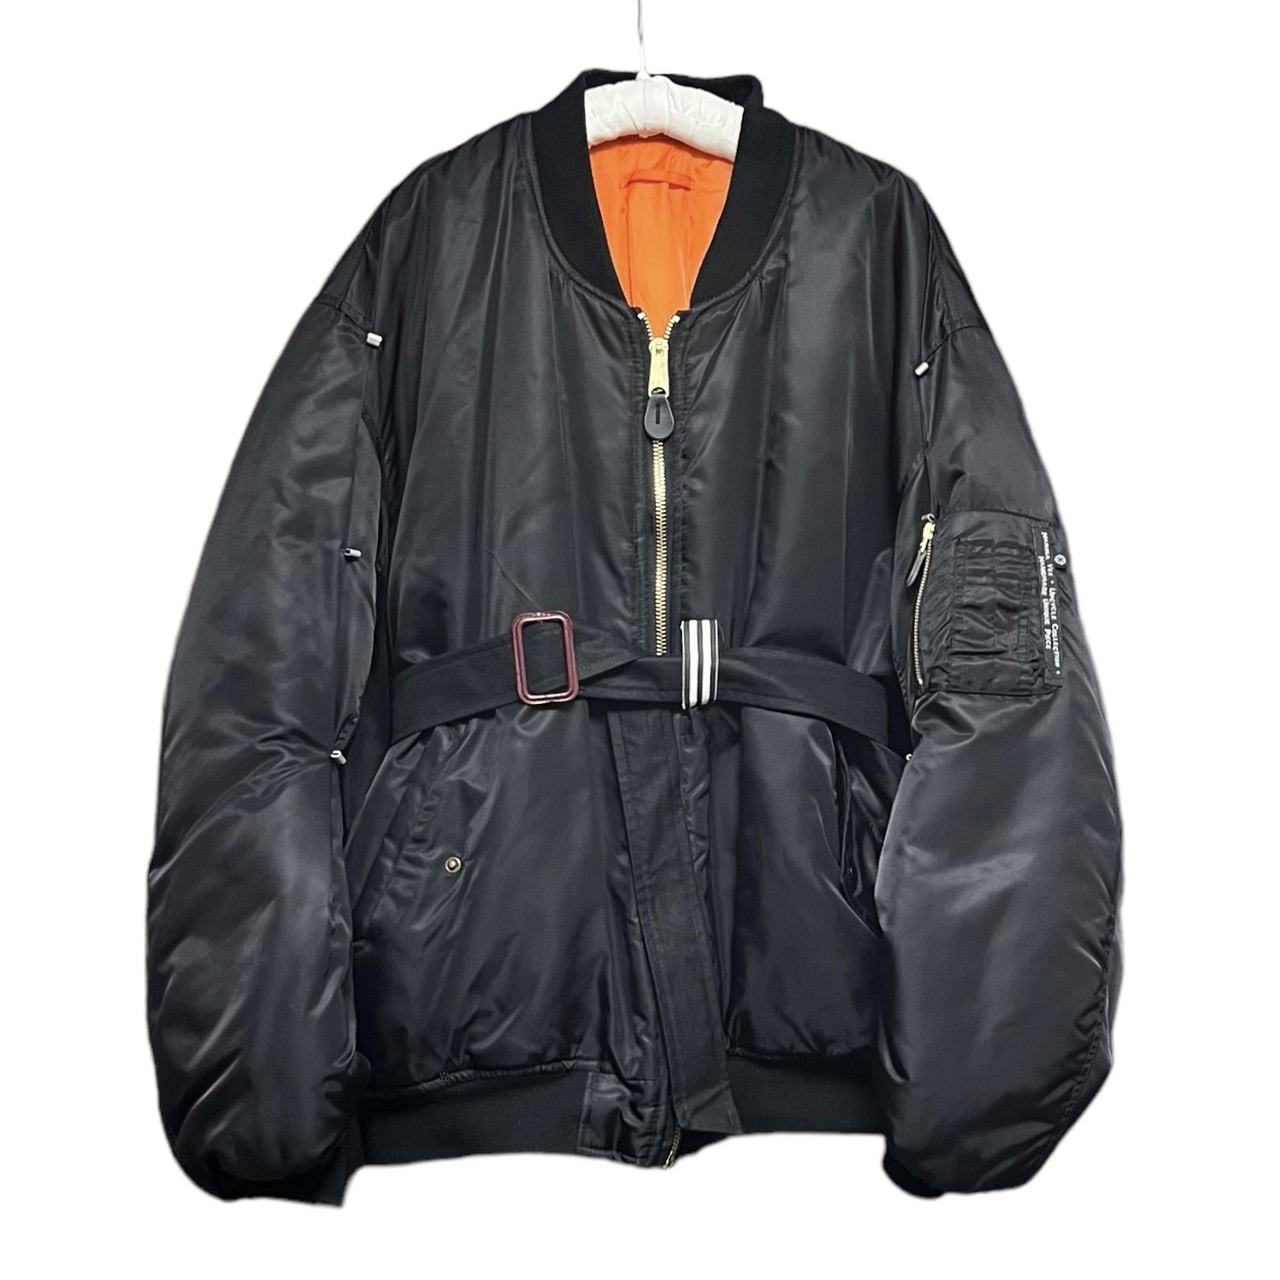 Marina Yee M.Y Bomber customized bomber jacket 買取金額 31,800円